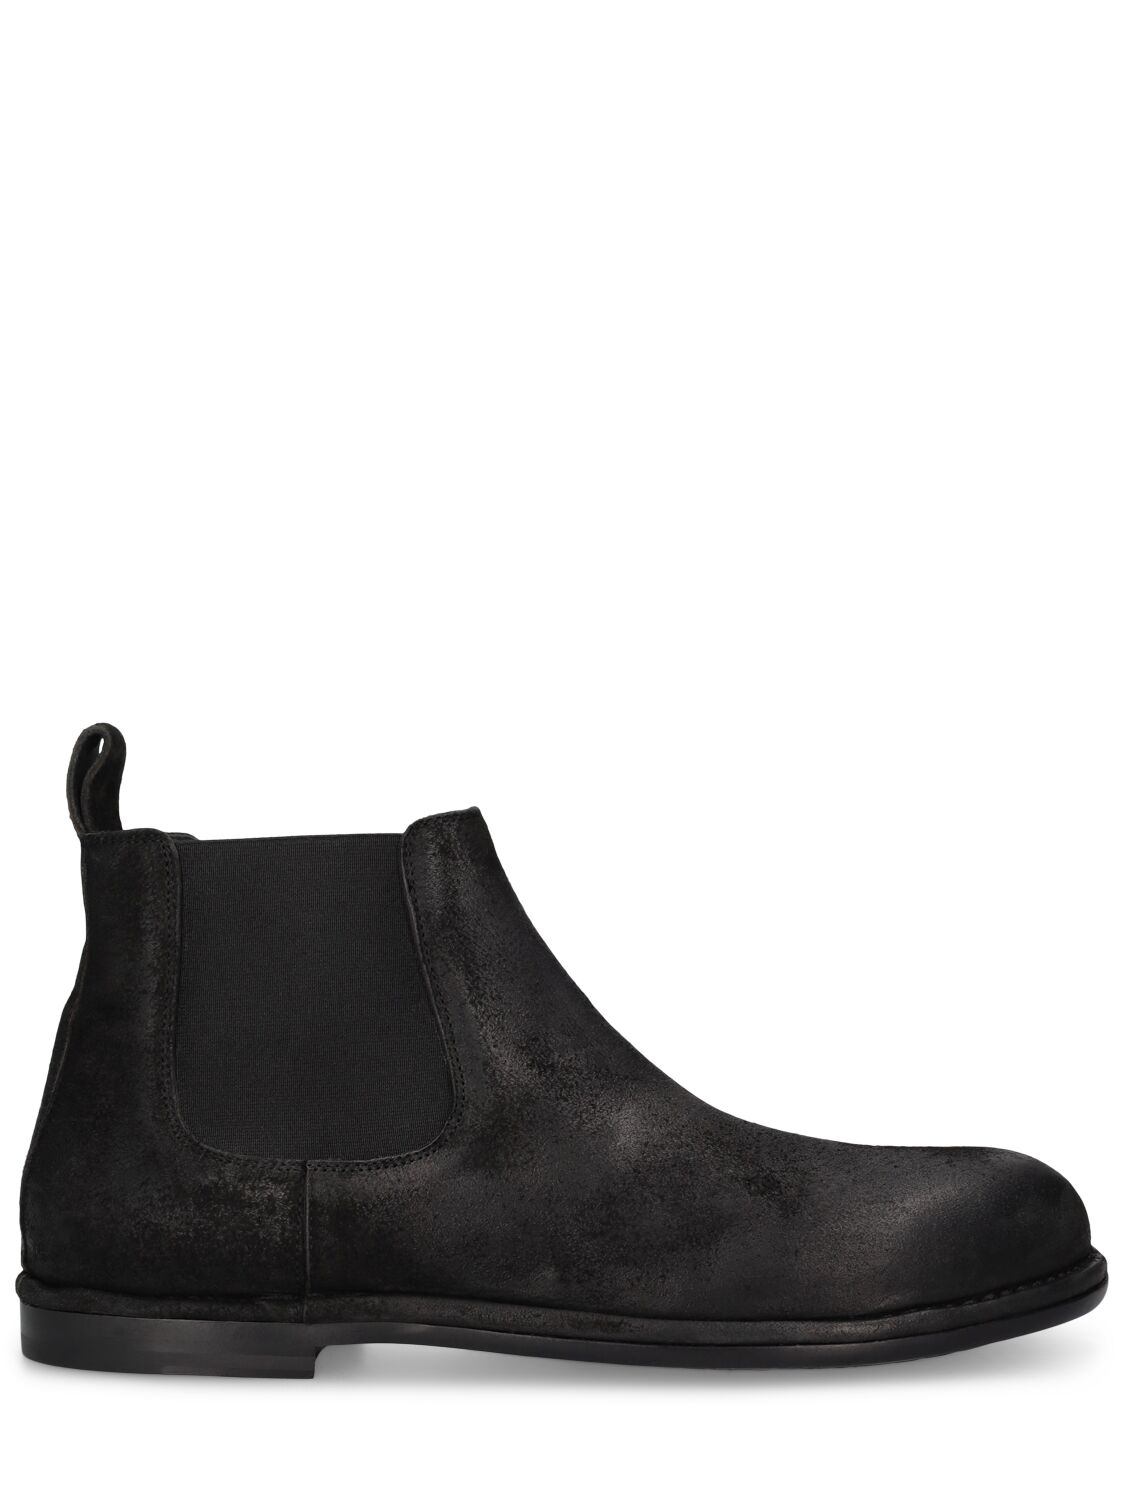 Mattia Capezzani Reverse Leather Chelsea Boots In Black